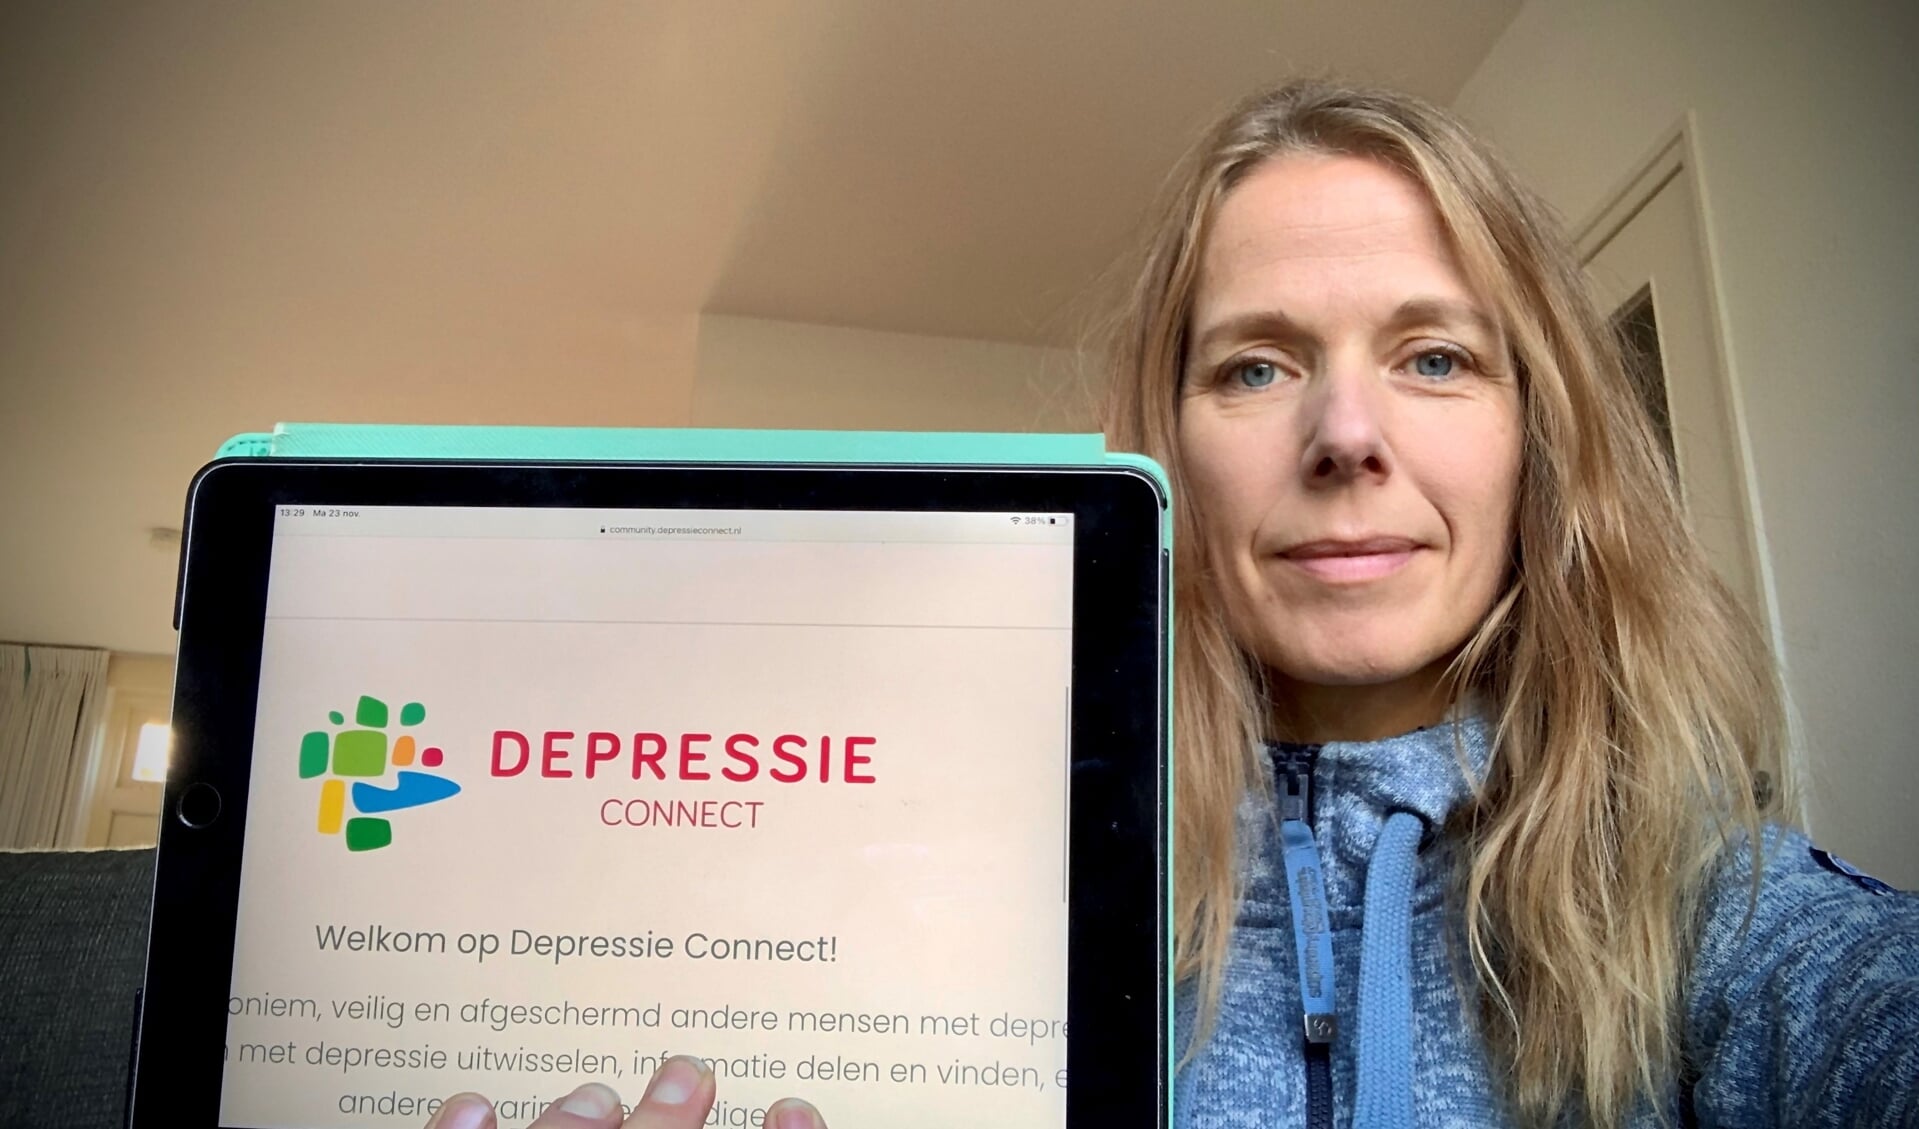 De Amersfoortse Heidi Heuvelman werkt voor de Landelijke Depressie Vereniging: 'Depressie speelt een grote rol in de samenleving, informele hulp wordt steeds belangrijker.'